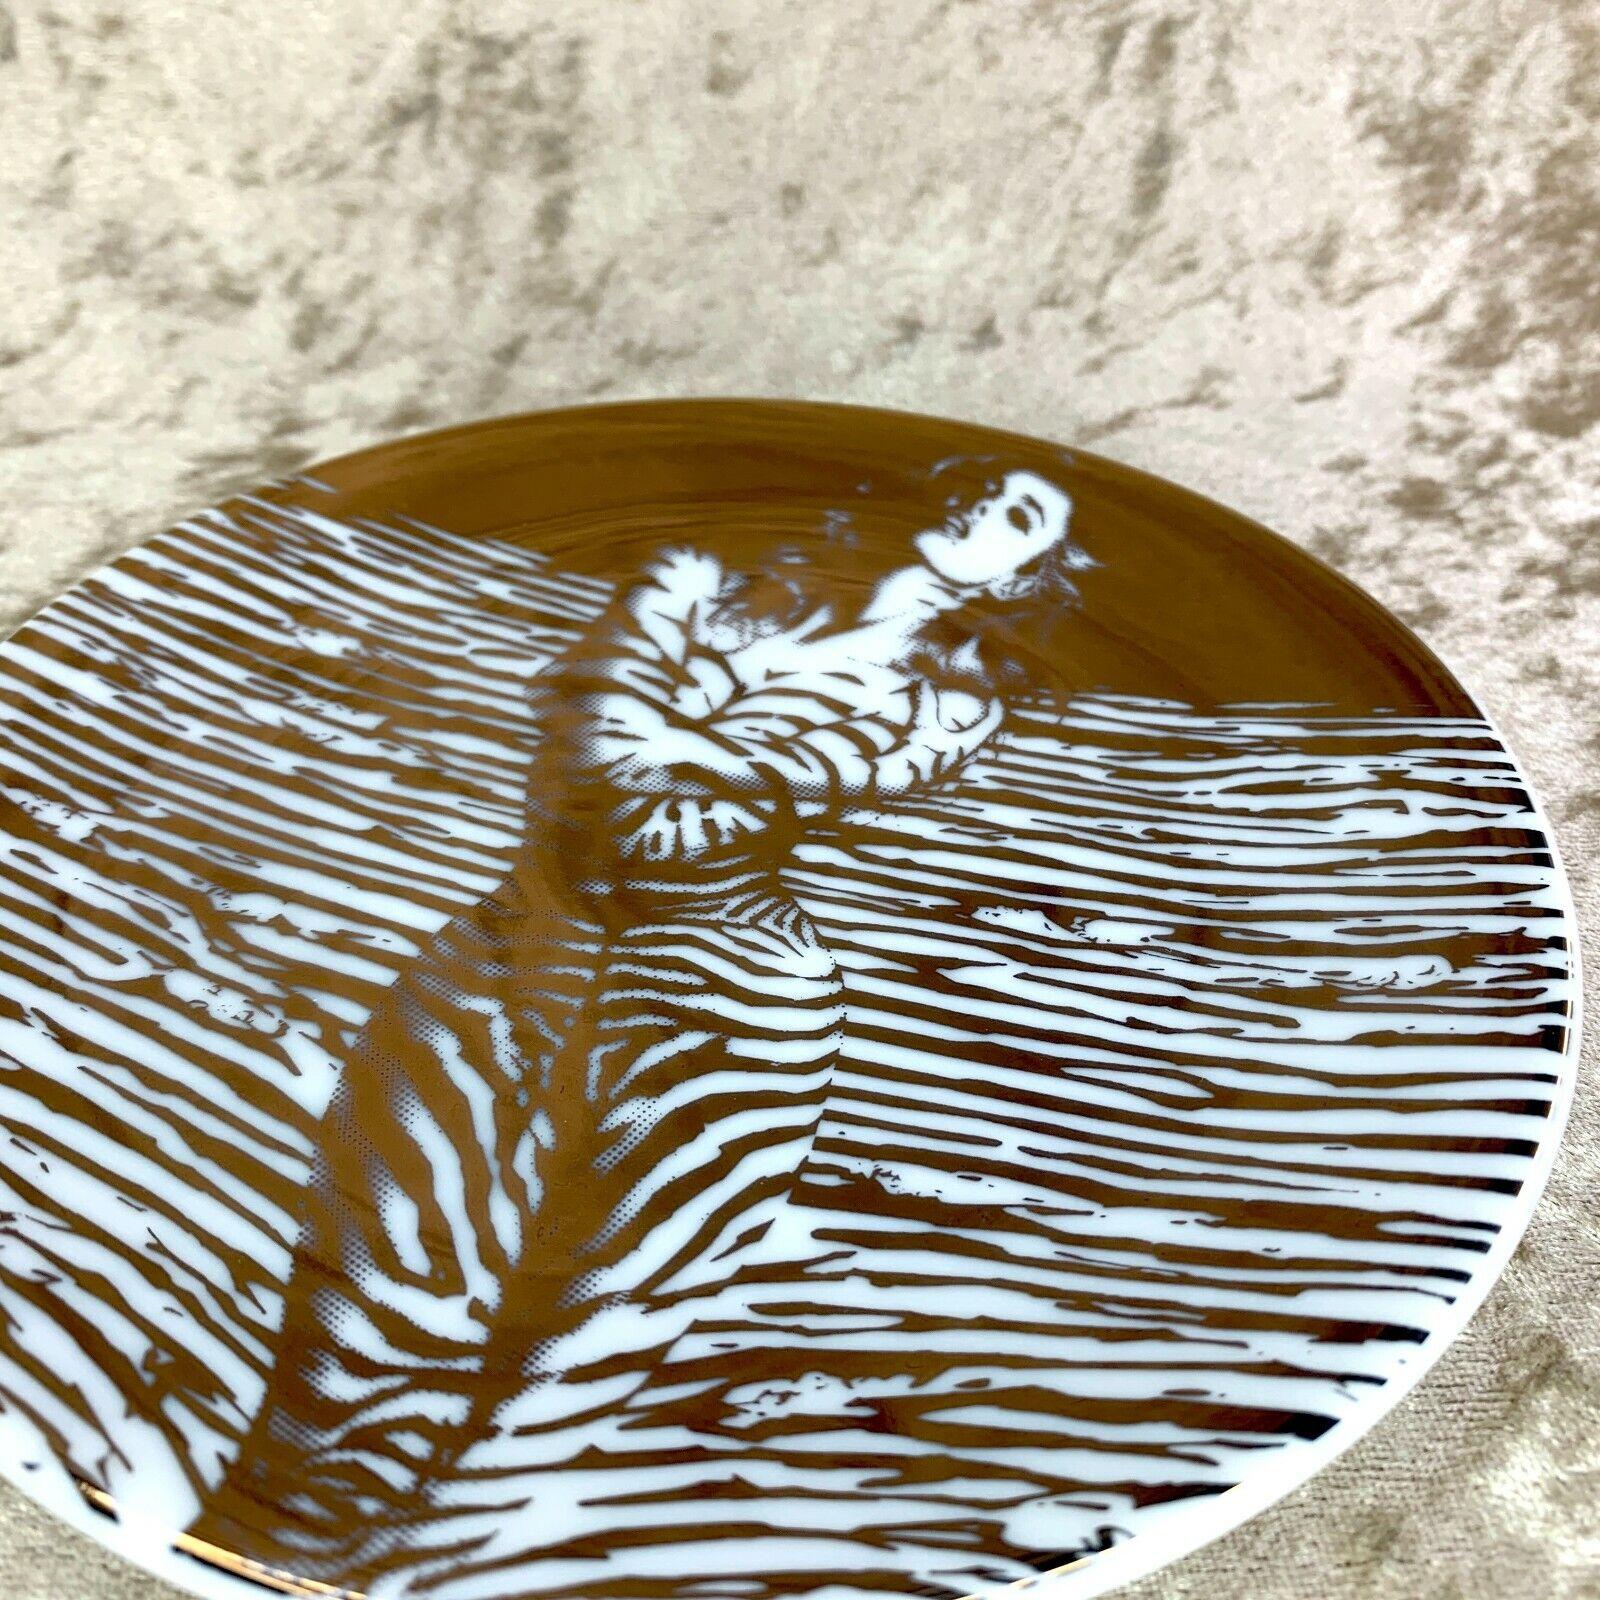 Dies ist ein limitiertes, seltenes Modell des berühmten japanischen Künstlers Hajime Sorayama

Hajime Sorayama Tasse & Untertasse Porzellan Creation Gallery G8 2007 mit Etui
Weiß und Gold 
Hoher Auktionsrekord
Hergestellt in Japan

Hajime Sorayama